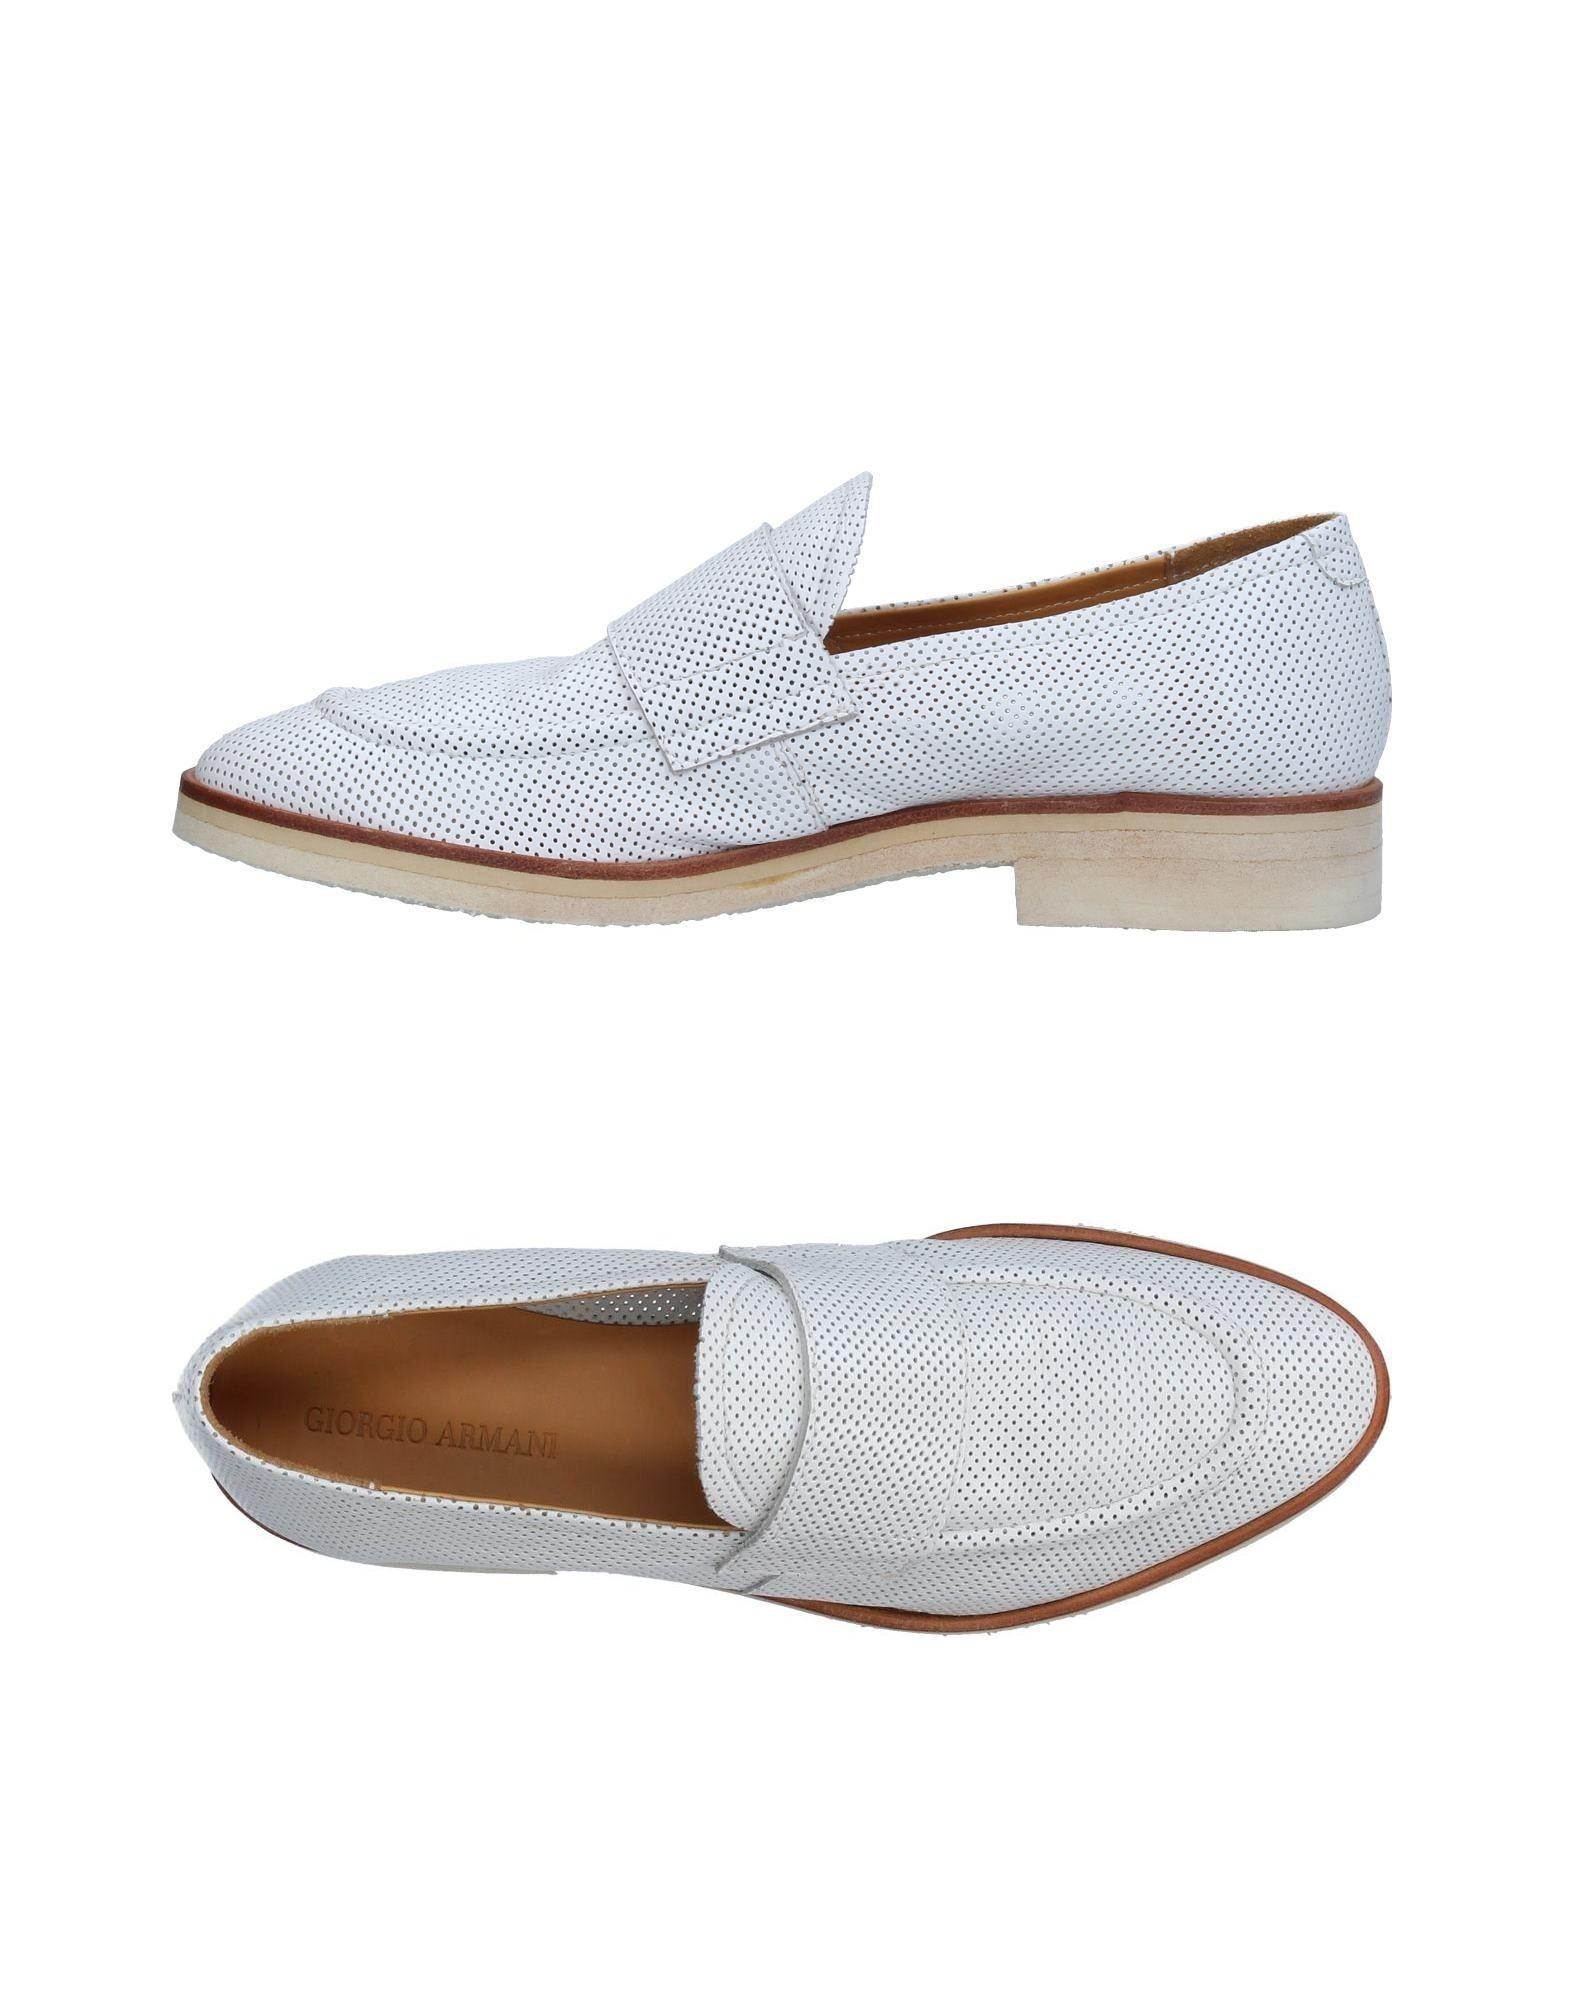 Lyst - Giorgio Armani Loafers in White